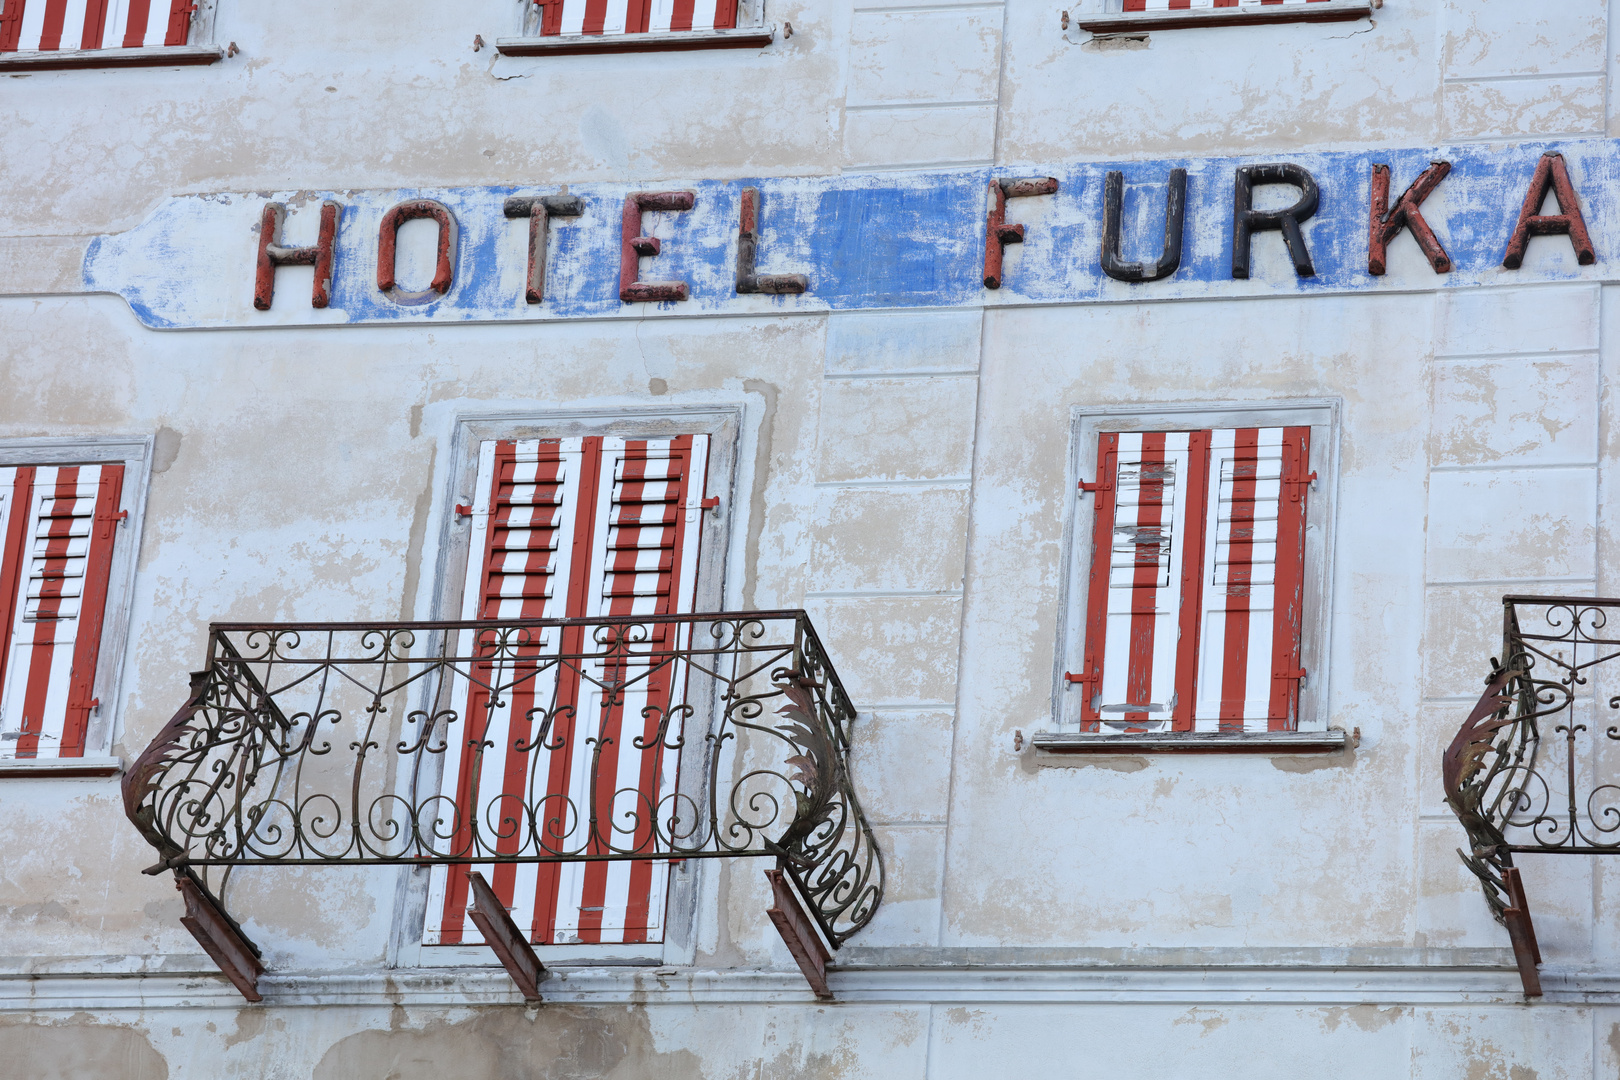 Hotel Furka